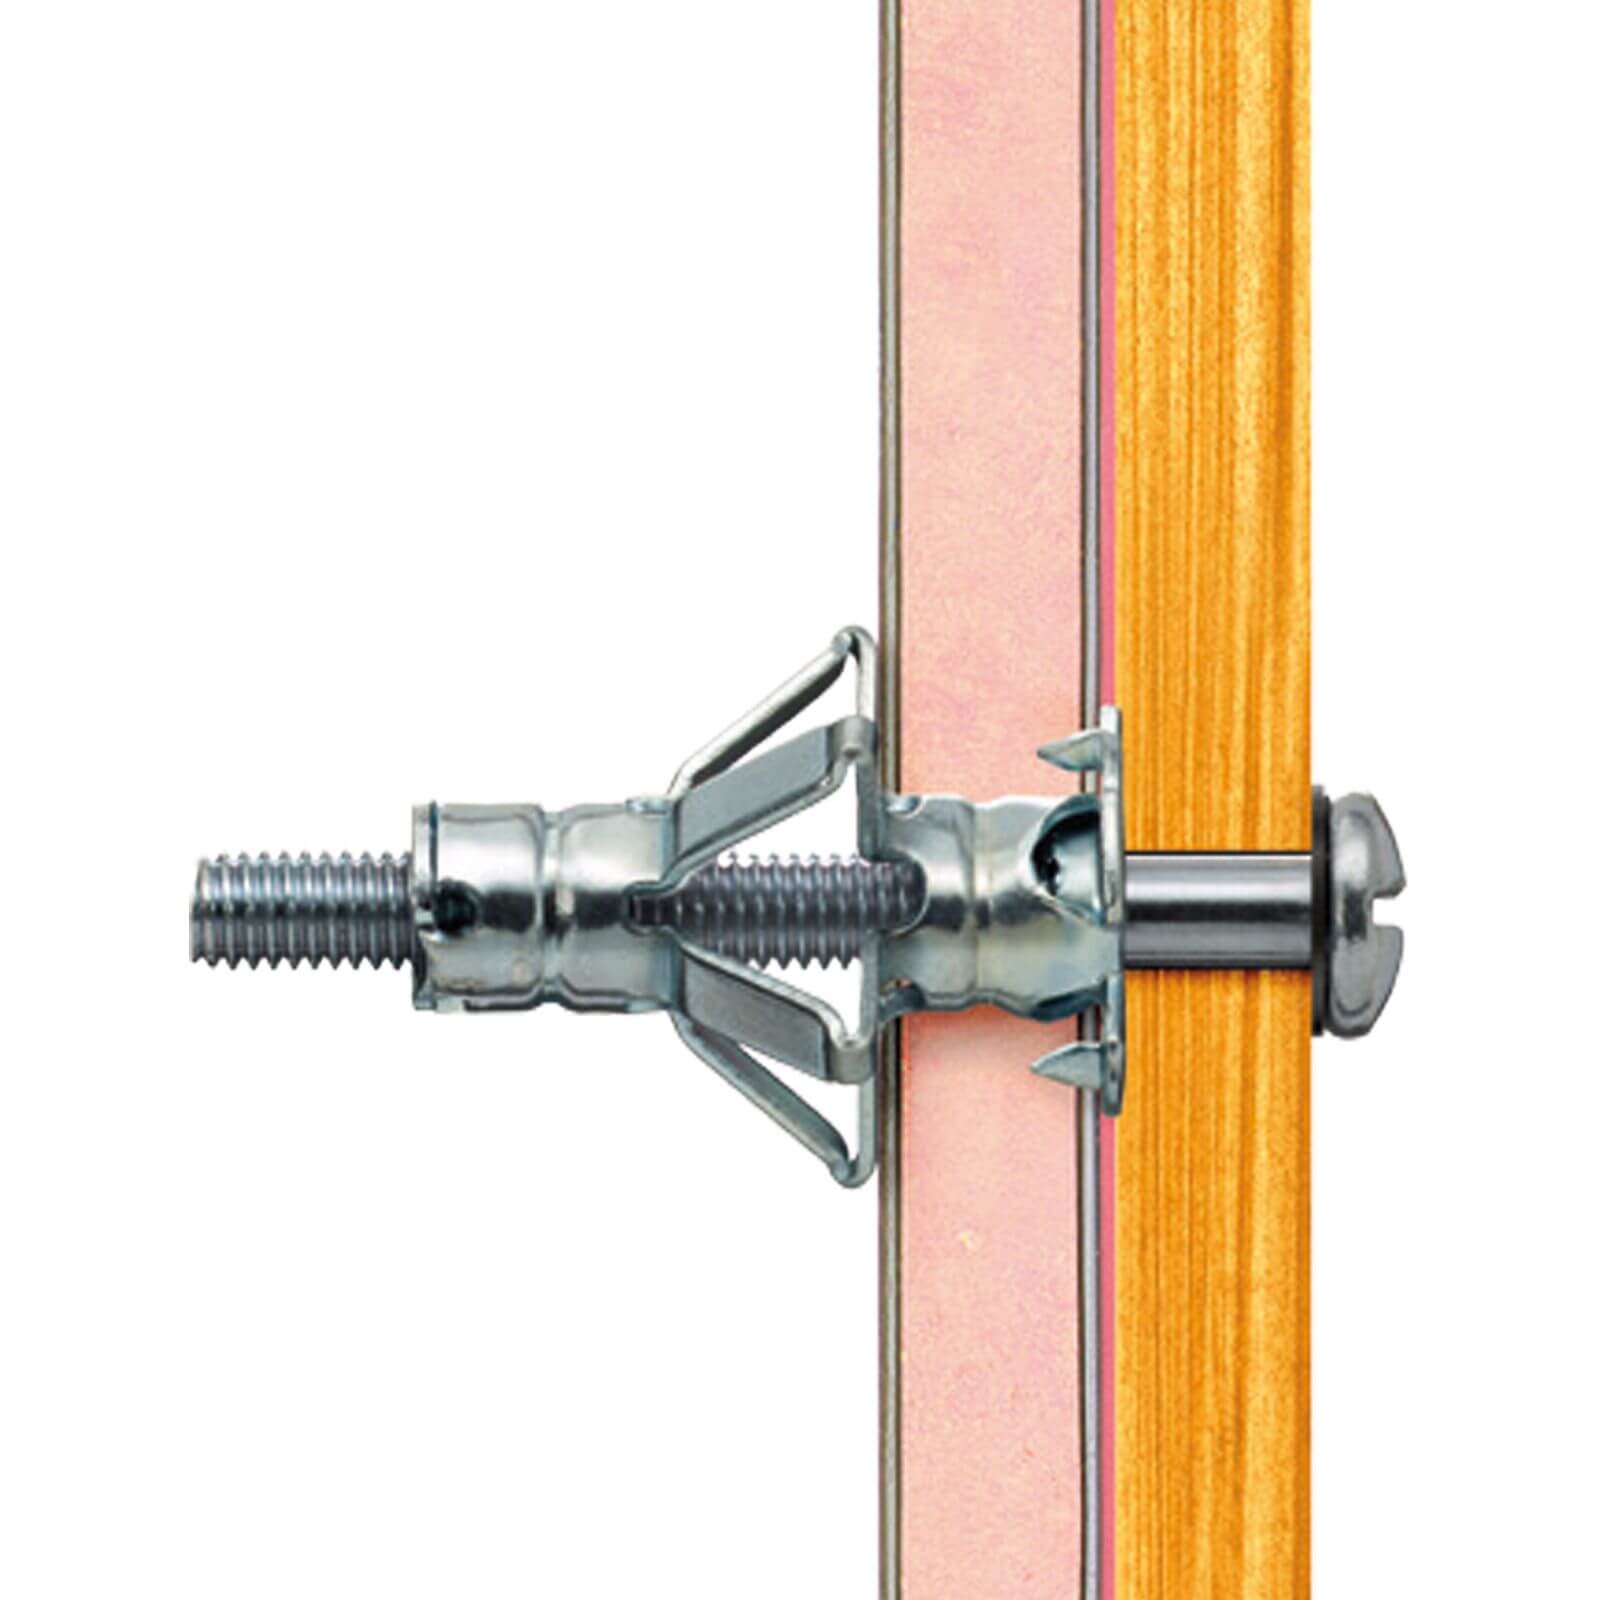 Plasplugs Cavity Anchor M4 x 10